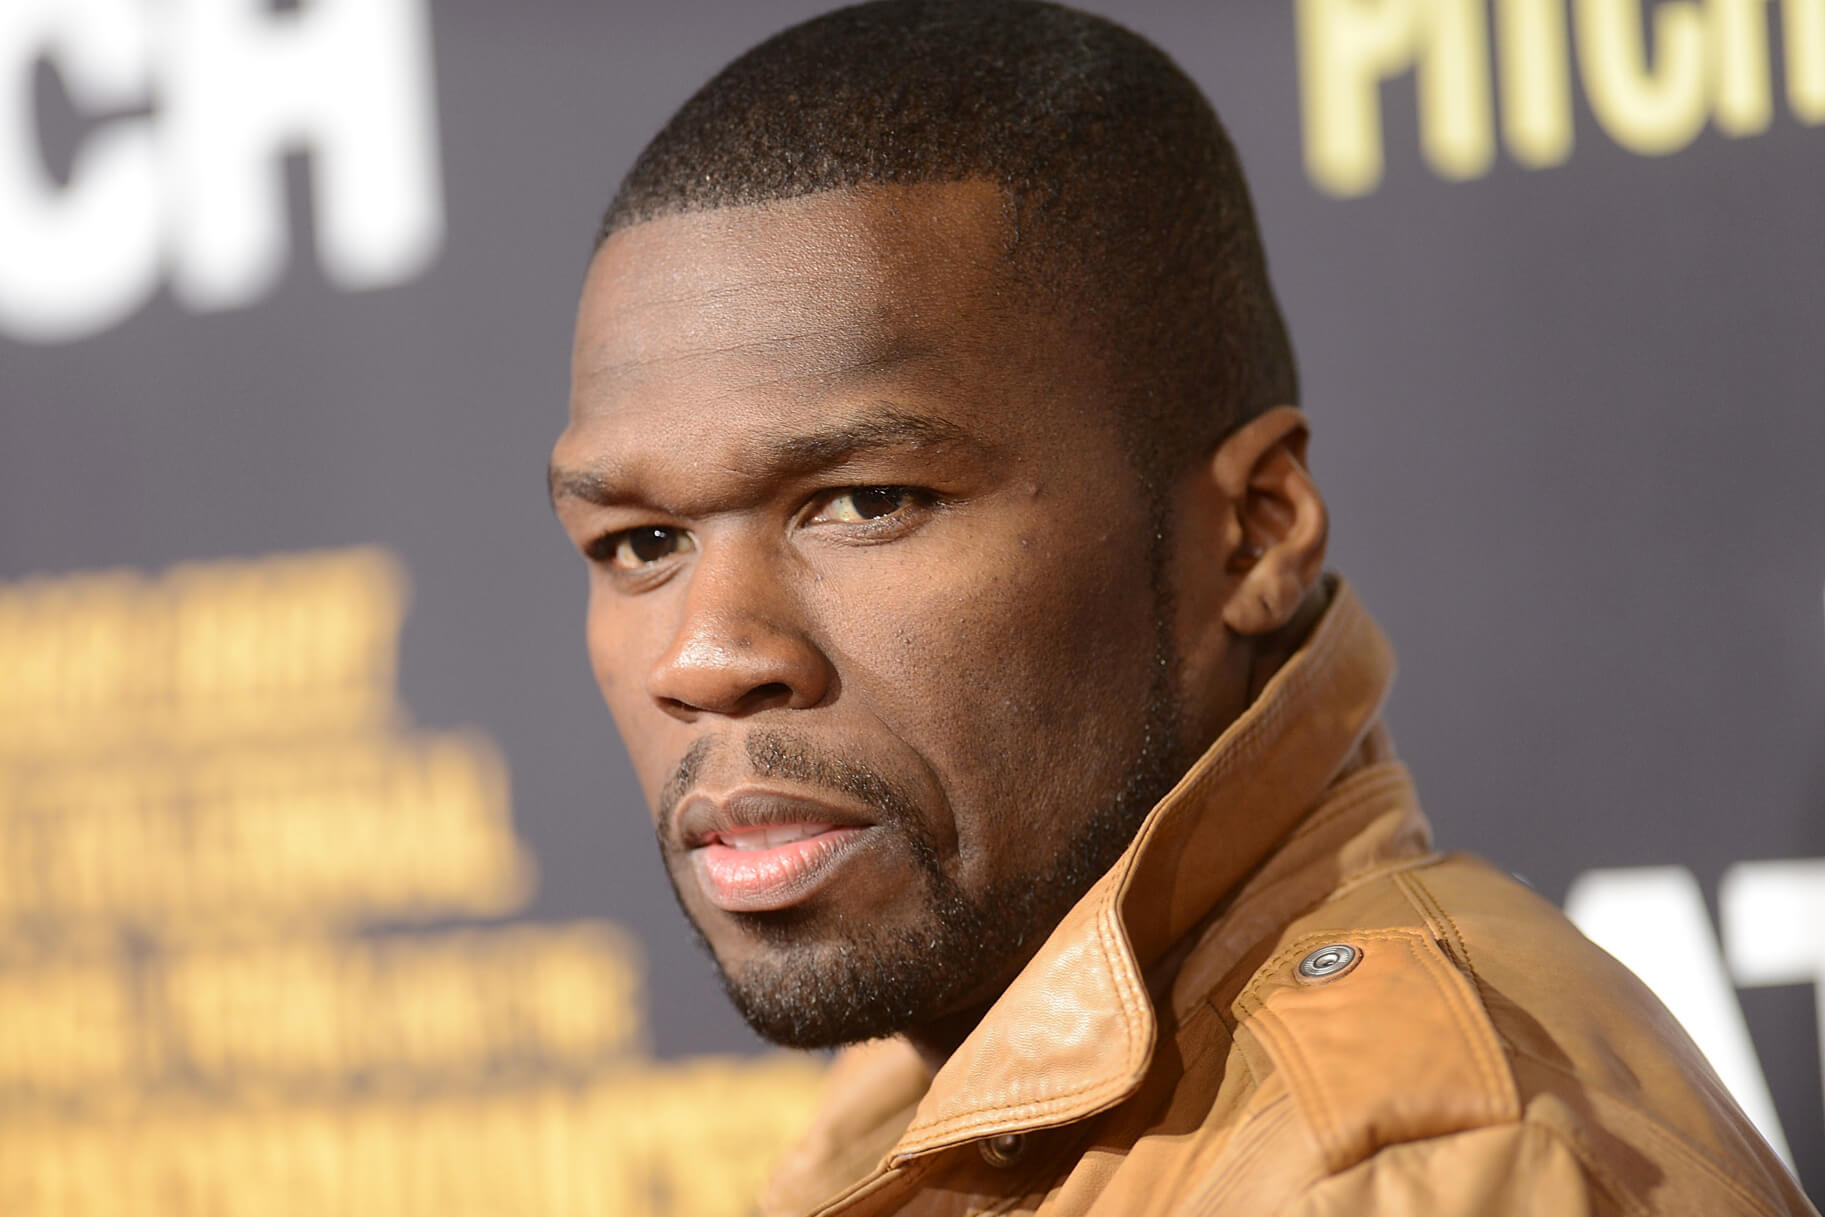 Rapper 50 Cent forgot he had 700 Bitcoins as part of an album deal